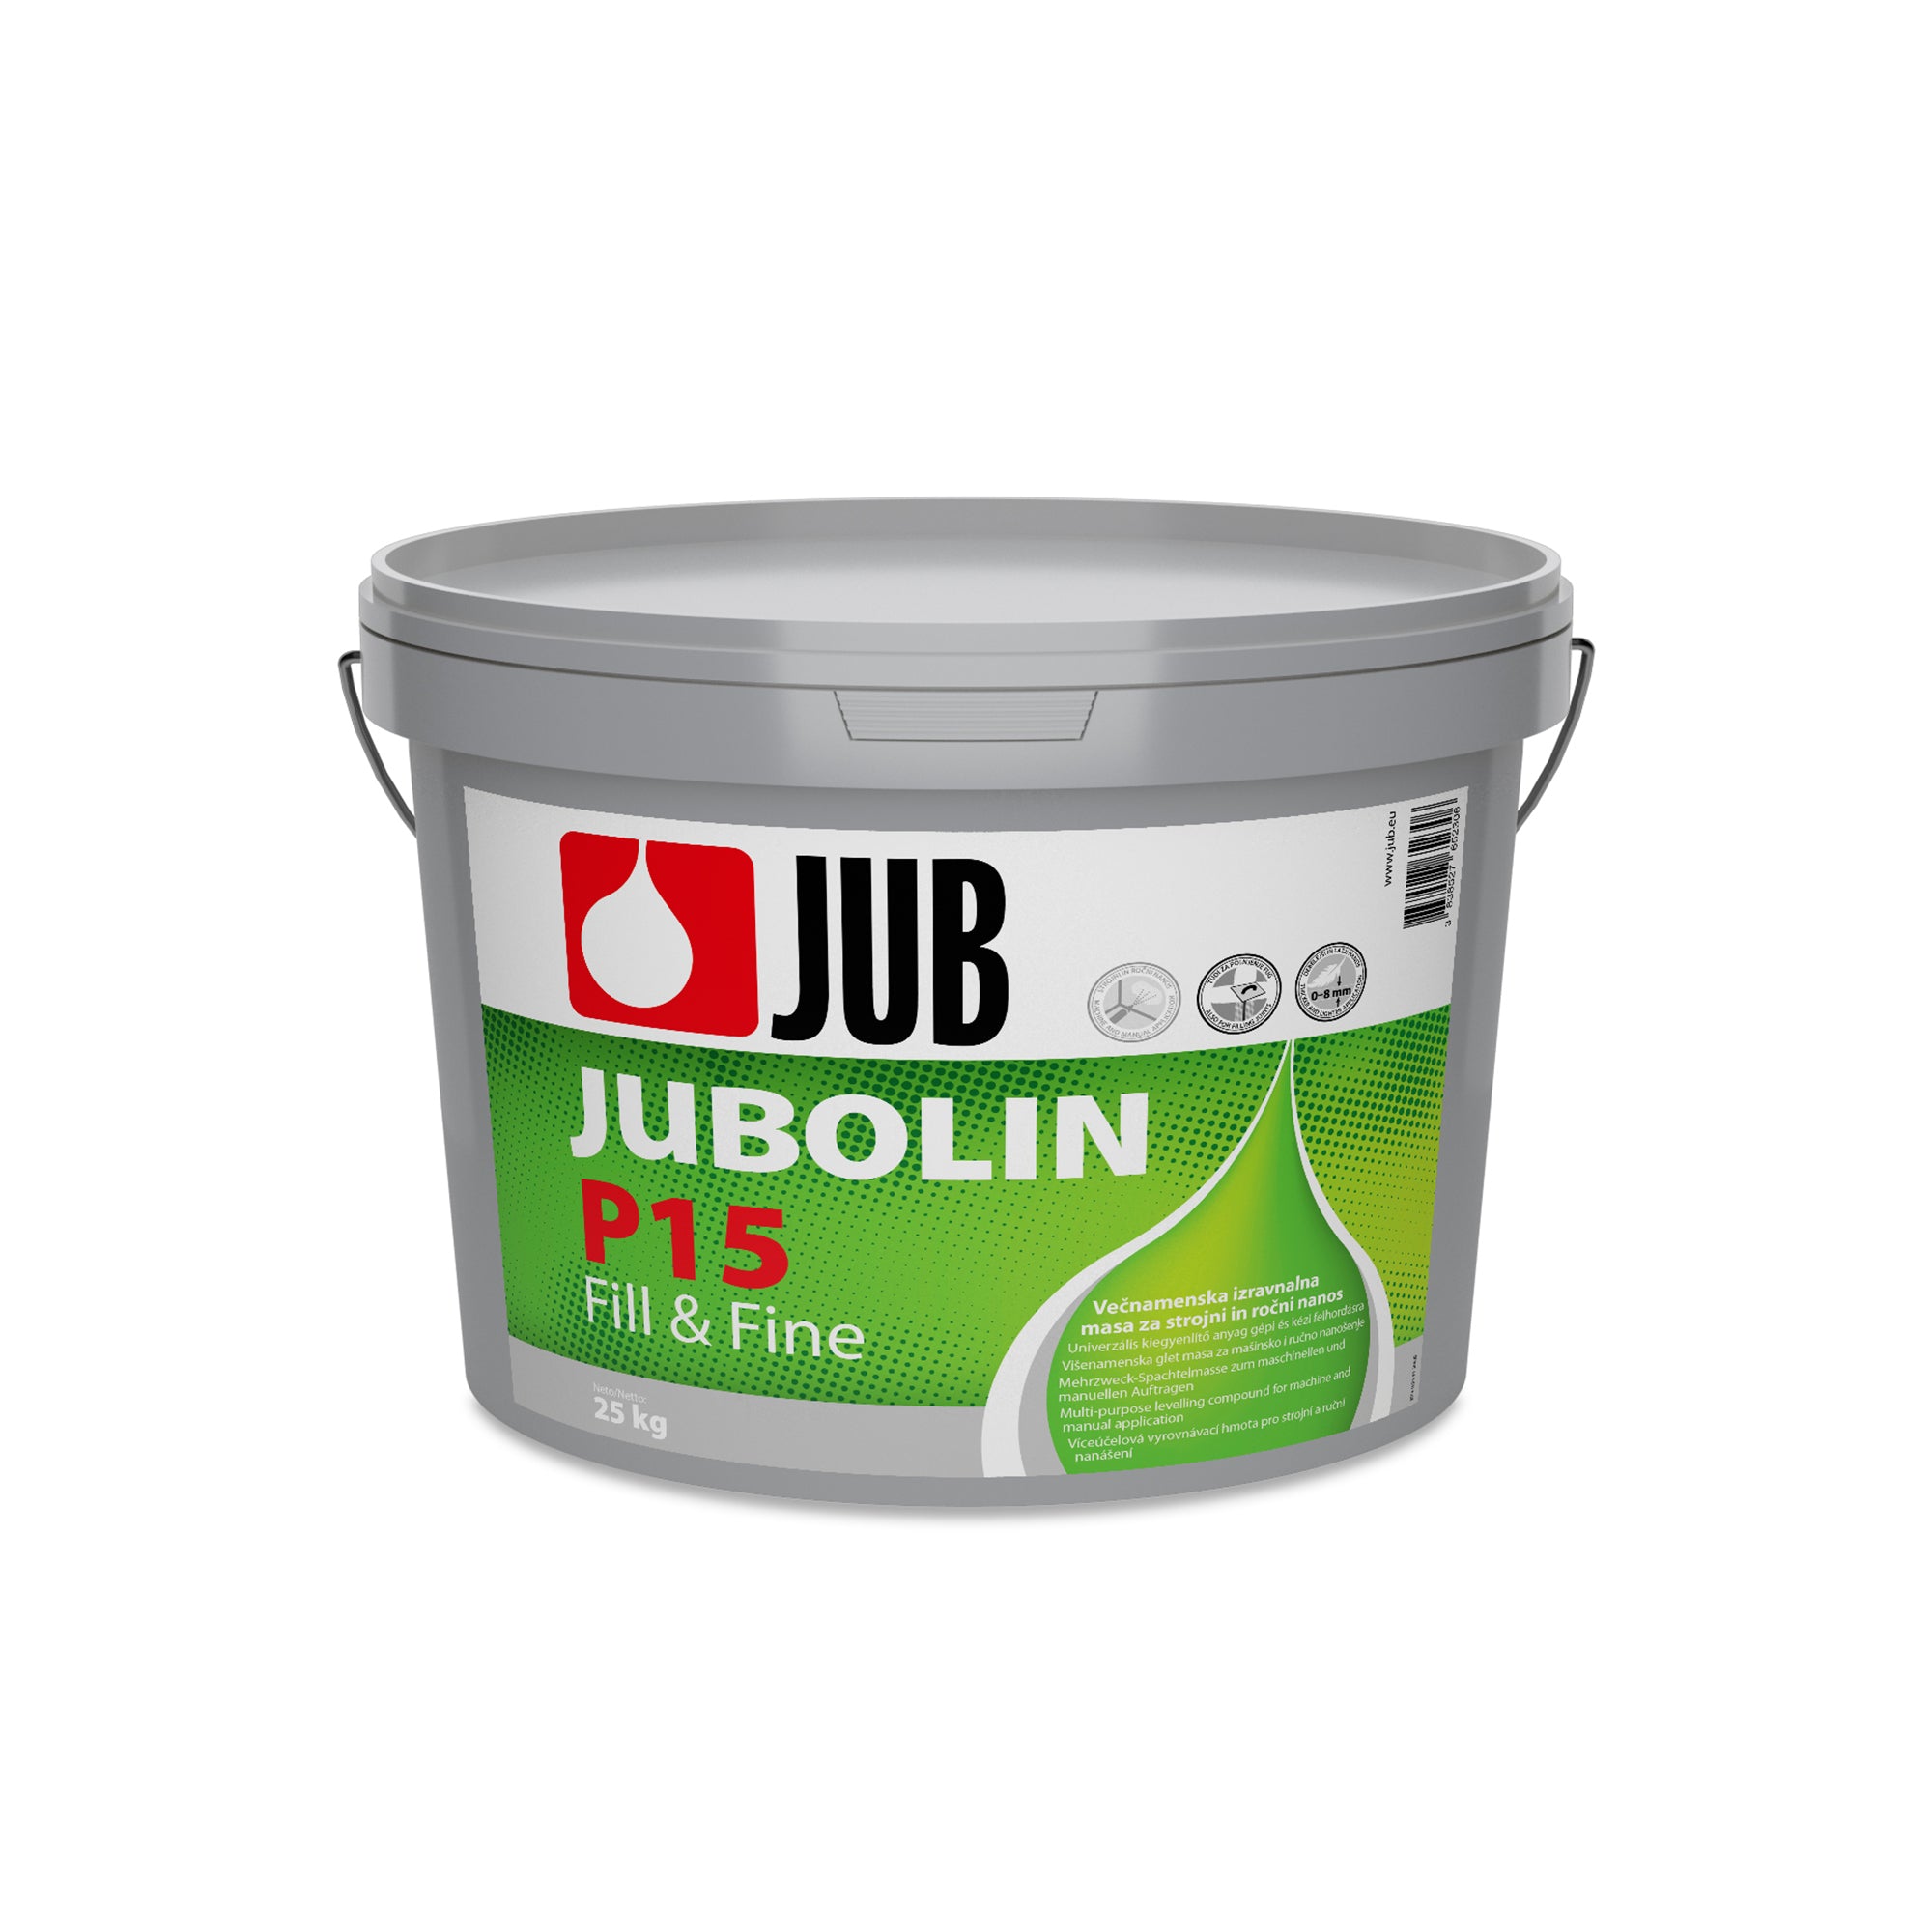 JUB JUBOLIN P15 Fill & Fine disperzný hrubovrstvý viacúčelový tmel 25 kg